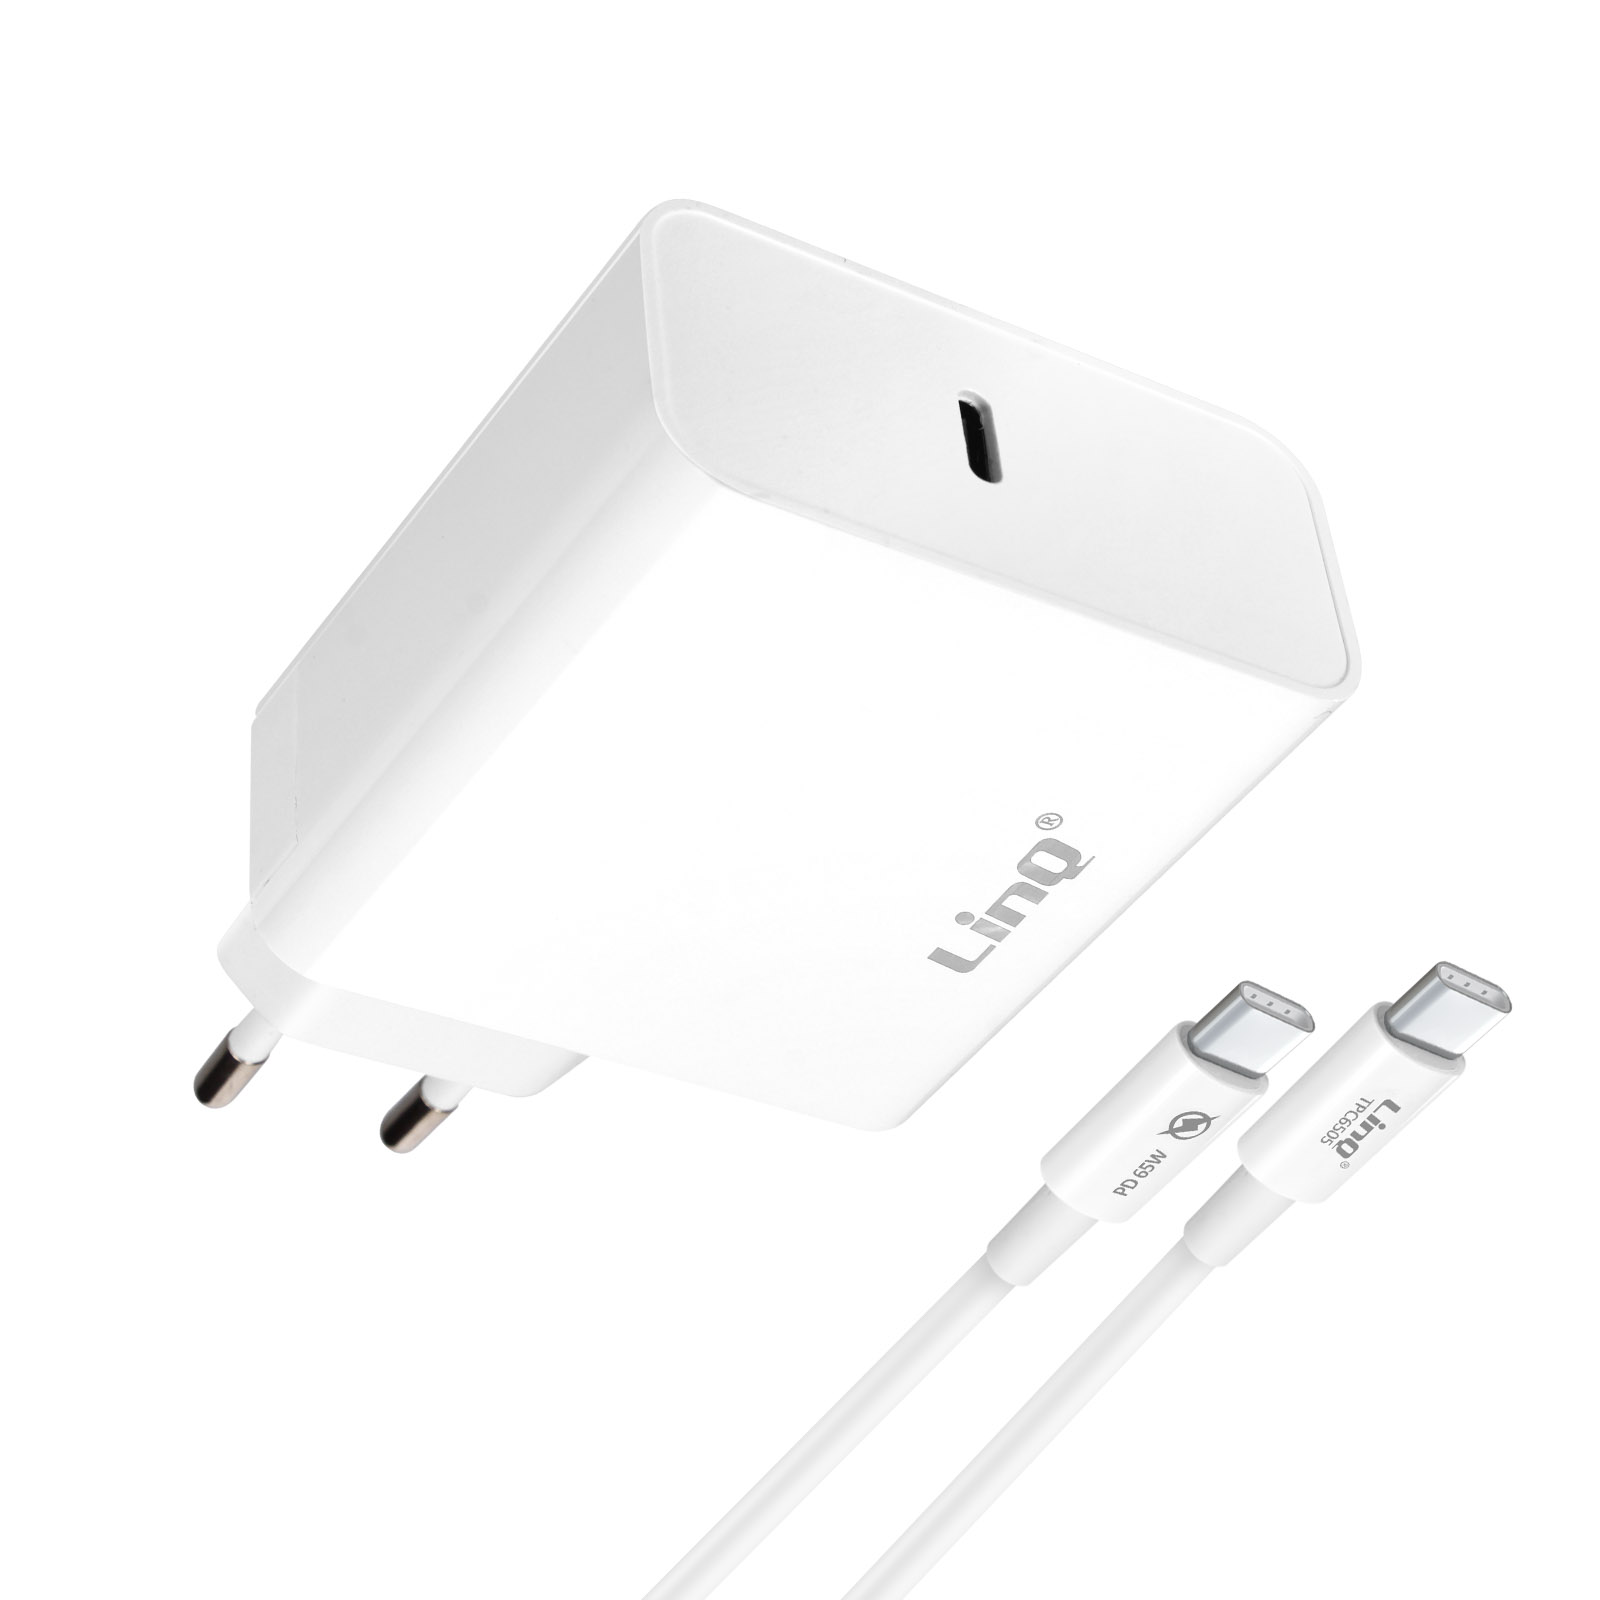 LINQ 65W, 2x USB + Universal, Ports USB-C Netzteile Weiß